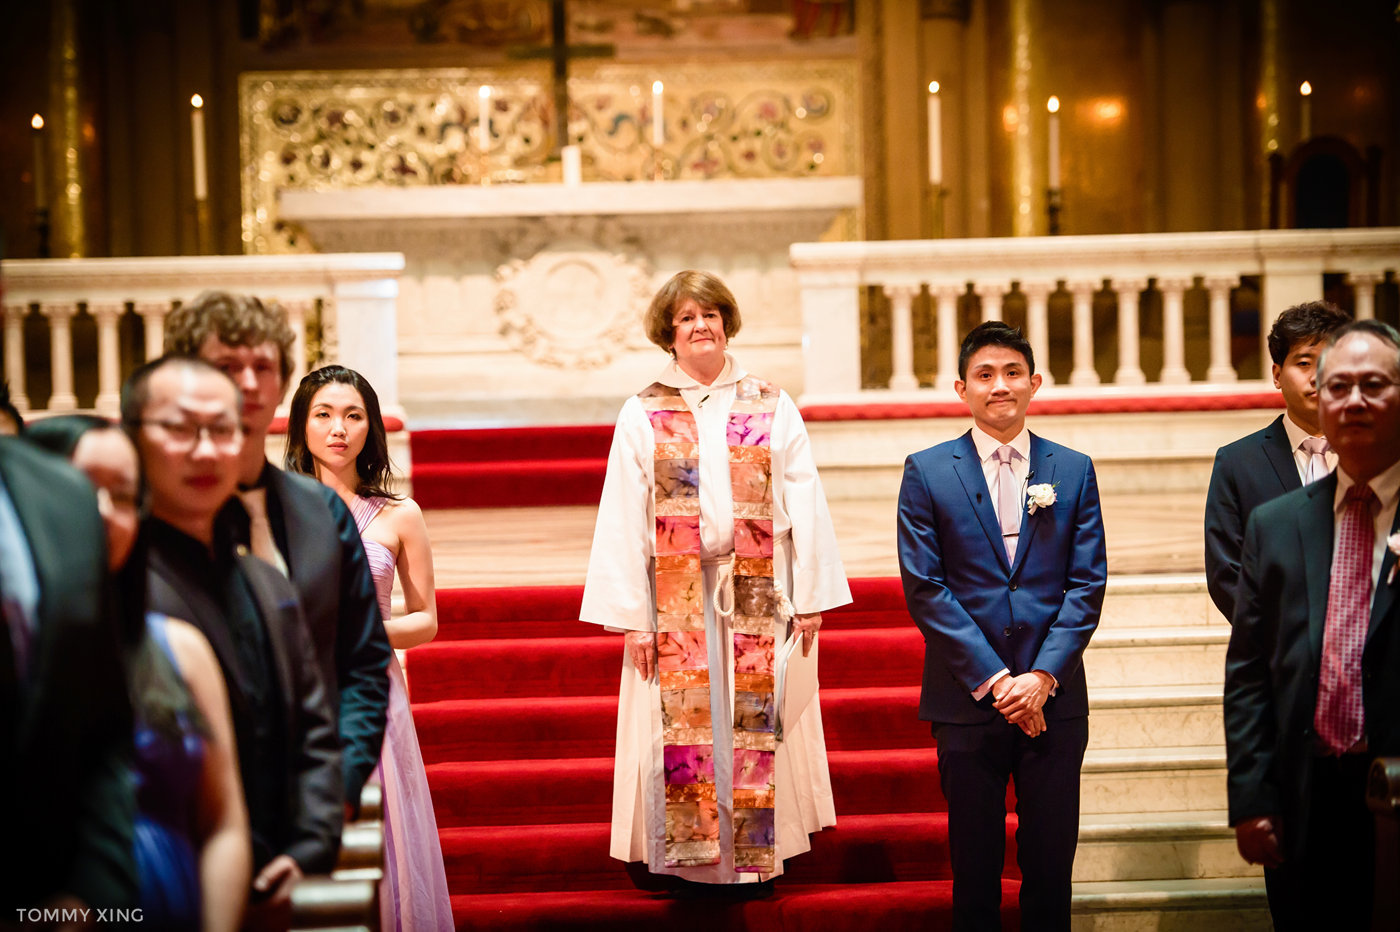 stanford memorial church wedding 旧金山湾区斯坦福教堂婚礼 Tommy Xing Photography 039.jpg